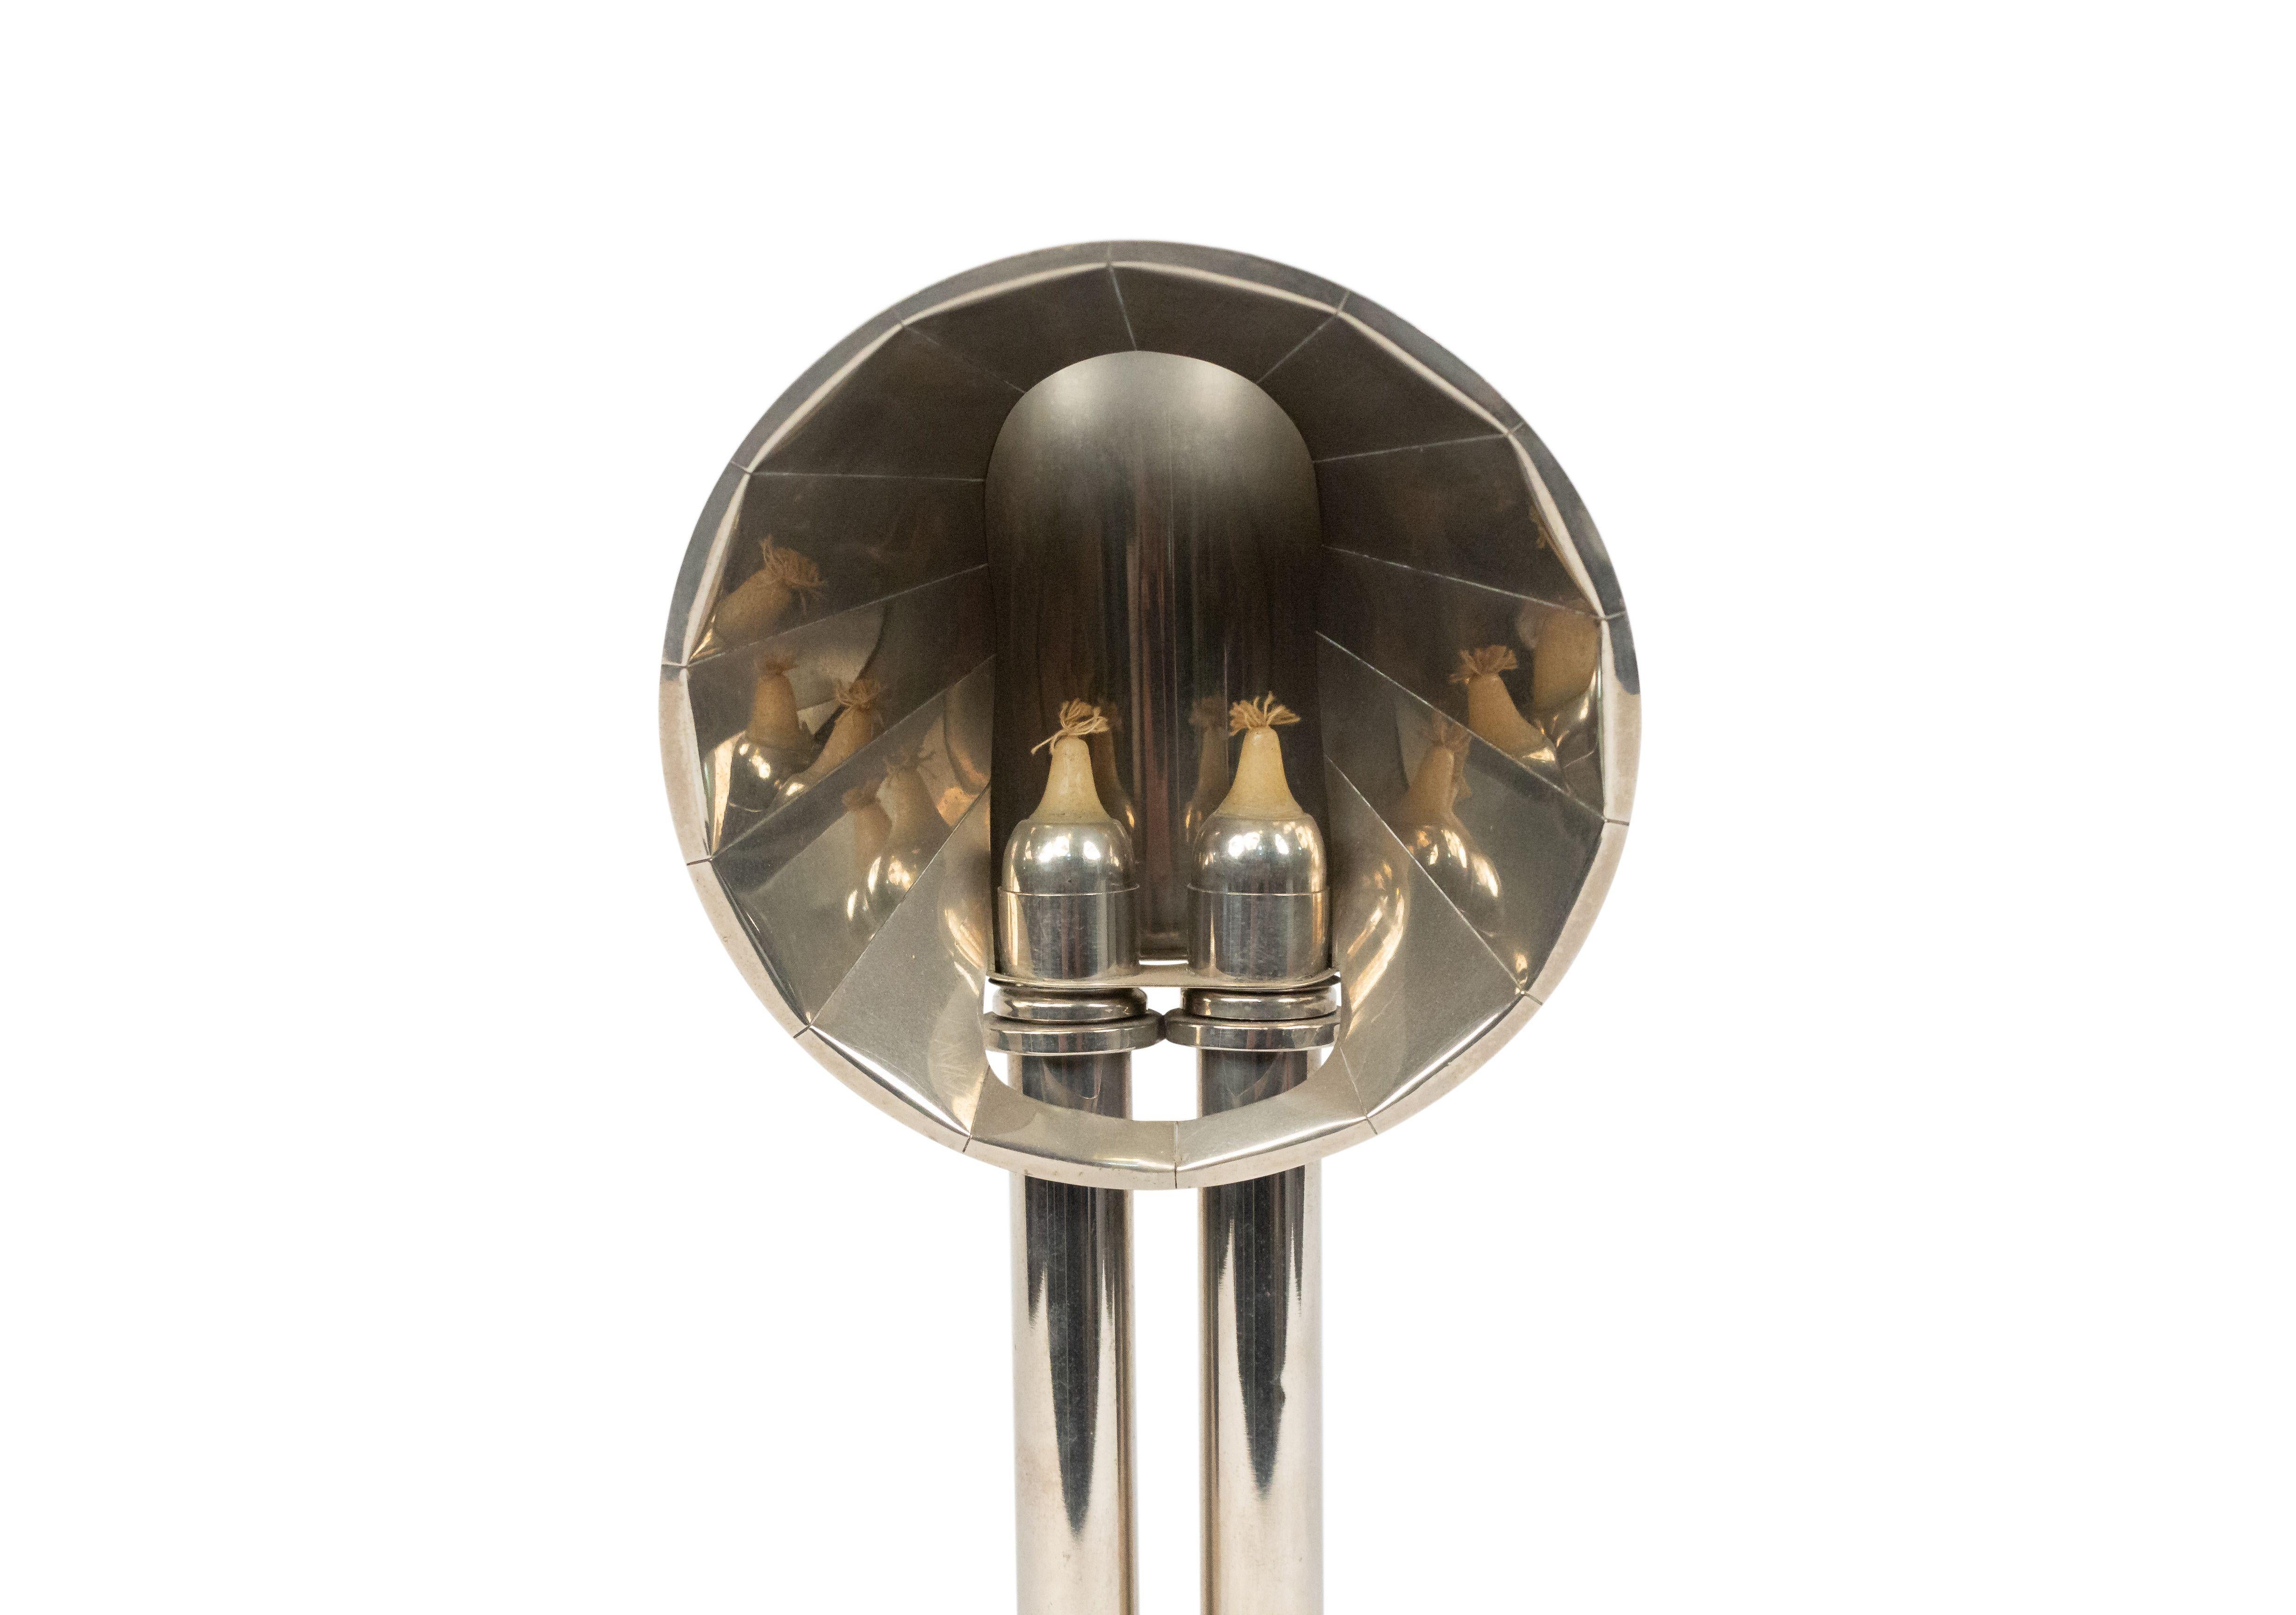 Paire de lampes d'étudiant à double chandelier de style victorien anglais, plaquées argent, sur une base ronde en gradins, avec un réflecteur au sommet.